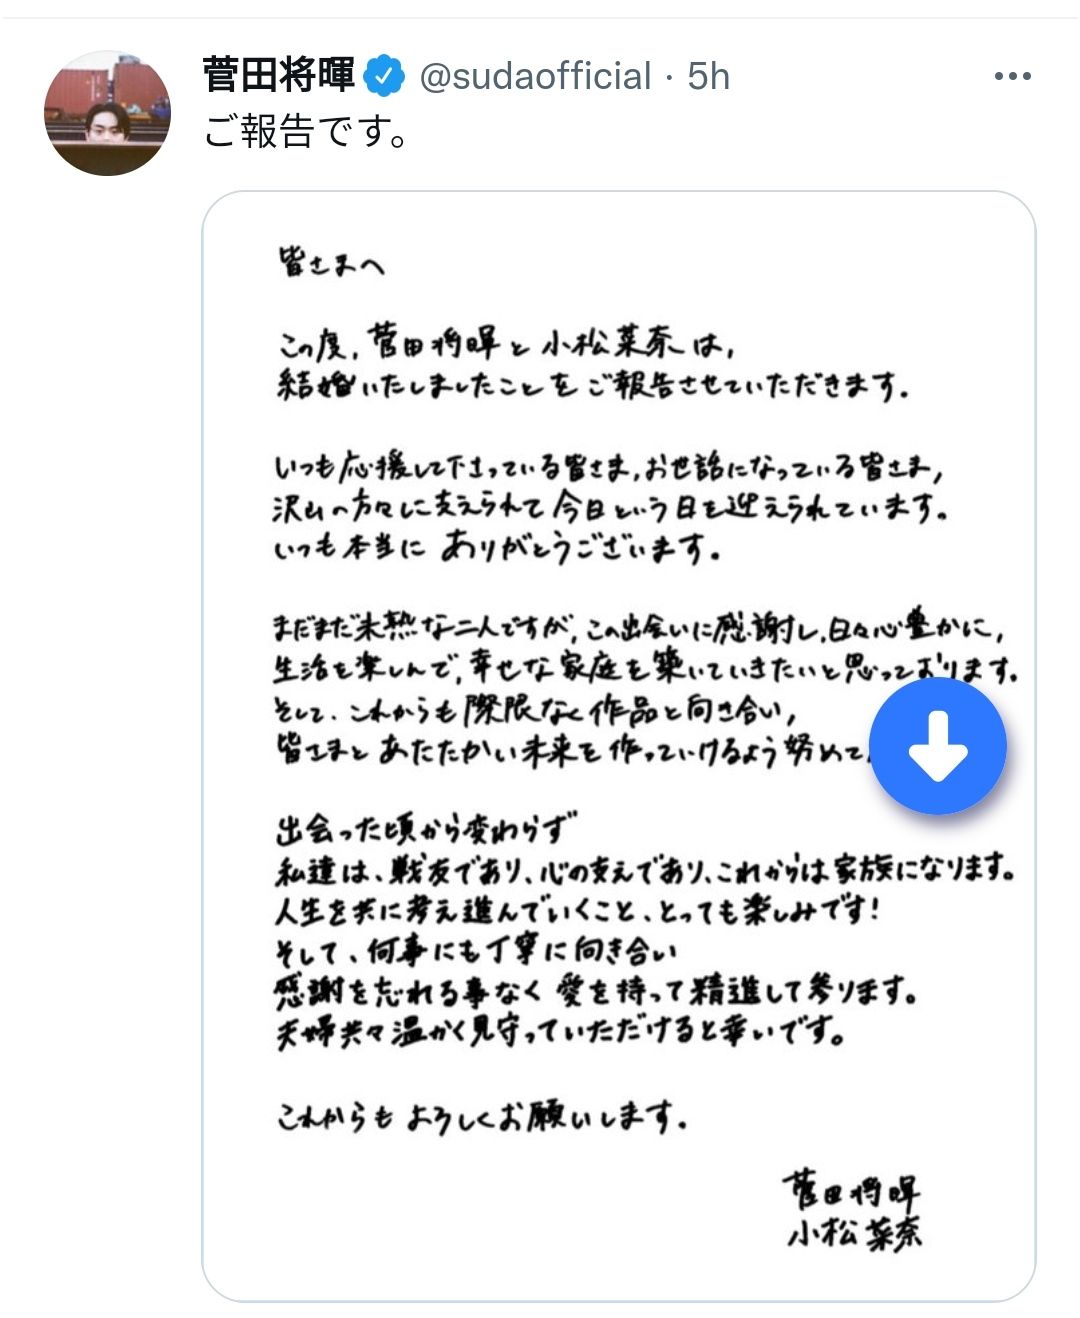 Unggahan Masaki Suda di Twitter yang berisi tentang pengumuman pernikahannya. 